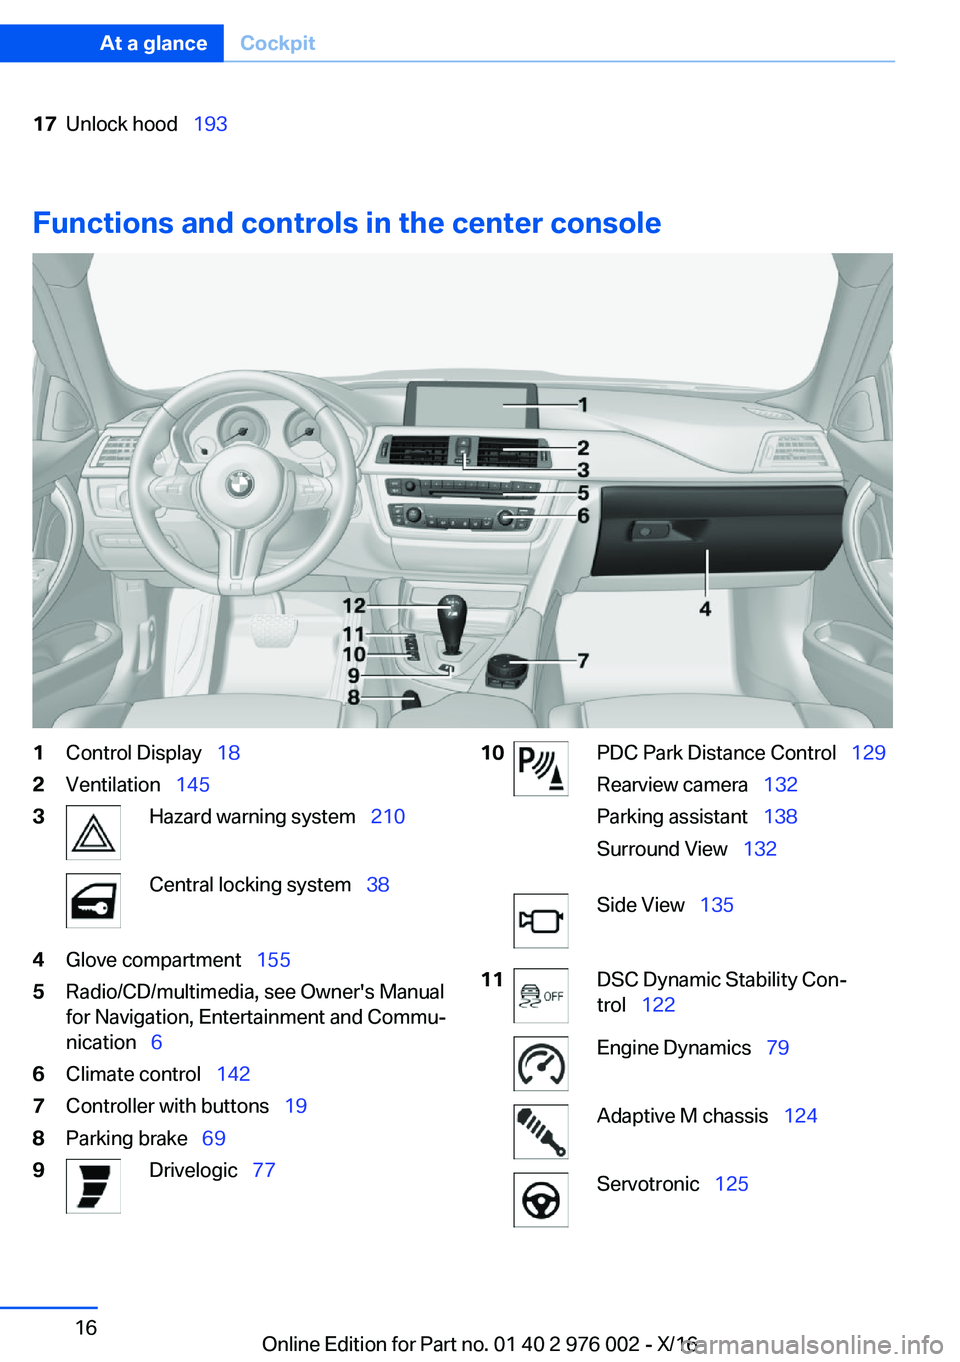 BMW M3 2017 User Guide �1�7�U�n�l�o�c�k� �h�o�o�d\_�1�9�3
�F�u�n�c�t�i�o�n�s��a�n�d��c�o�n�t�r�o�l�s��i�n��t�h�e��c�e�n�t�e�r��c�o�n�s�o�l�e
�1�C�o�n�t�r�o�l� �D�i�s�p�l�a�y\_ �1�8�2�V�e�n�t�i�l�a�t�i�o�n\_�1�4�